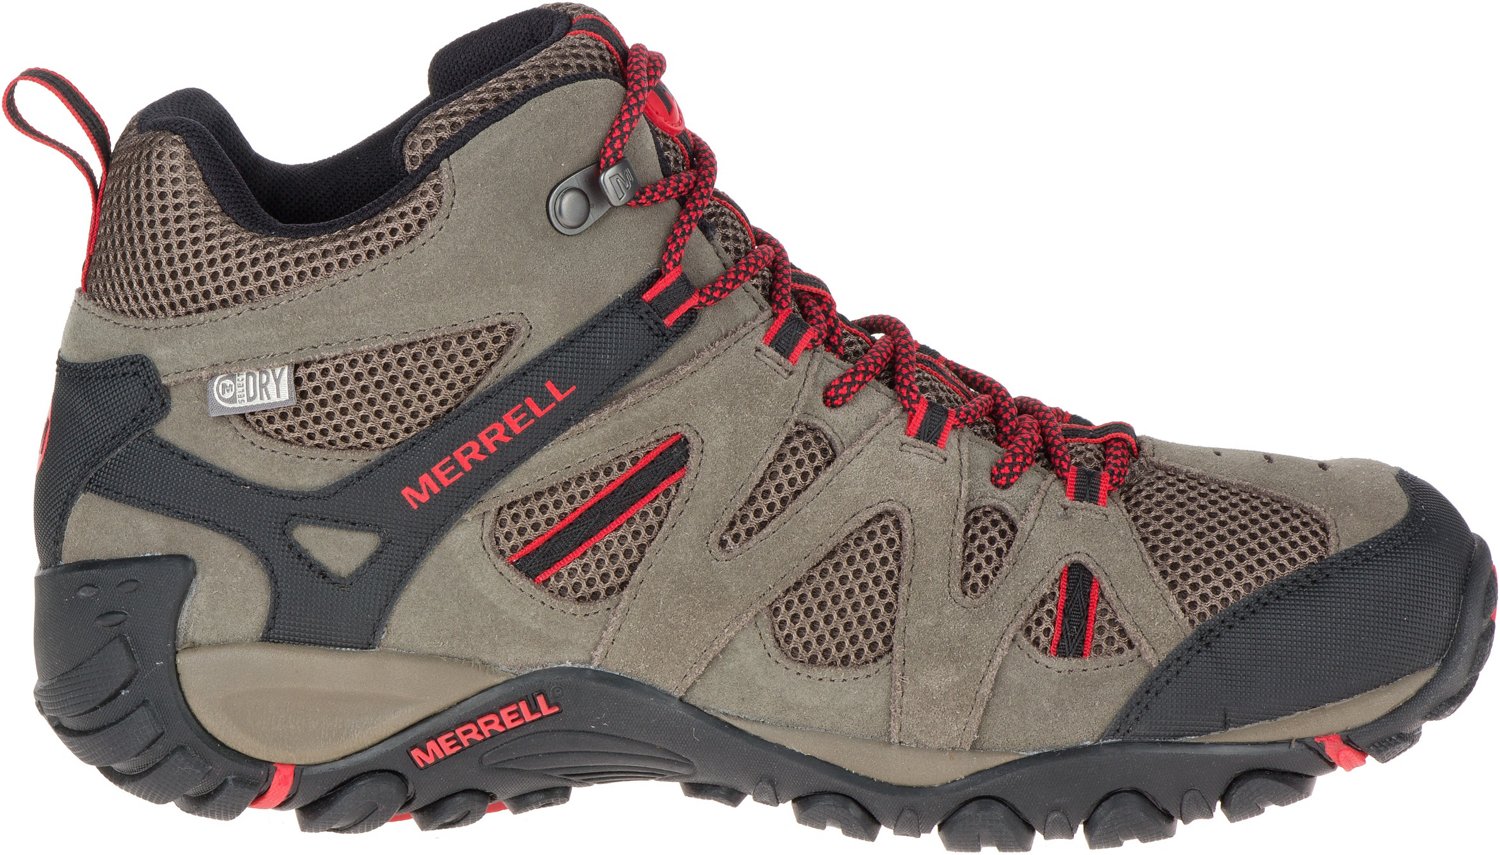 Merrell Men's Deverta Mid Ventilated Waterproof Hiking Boots | Academy